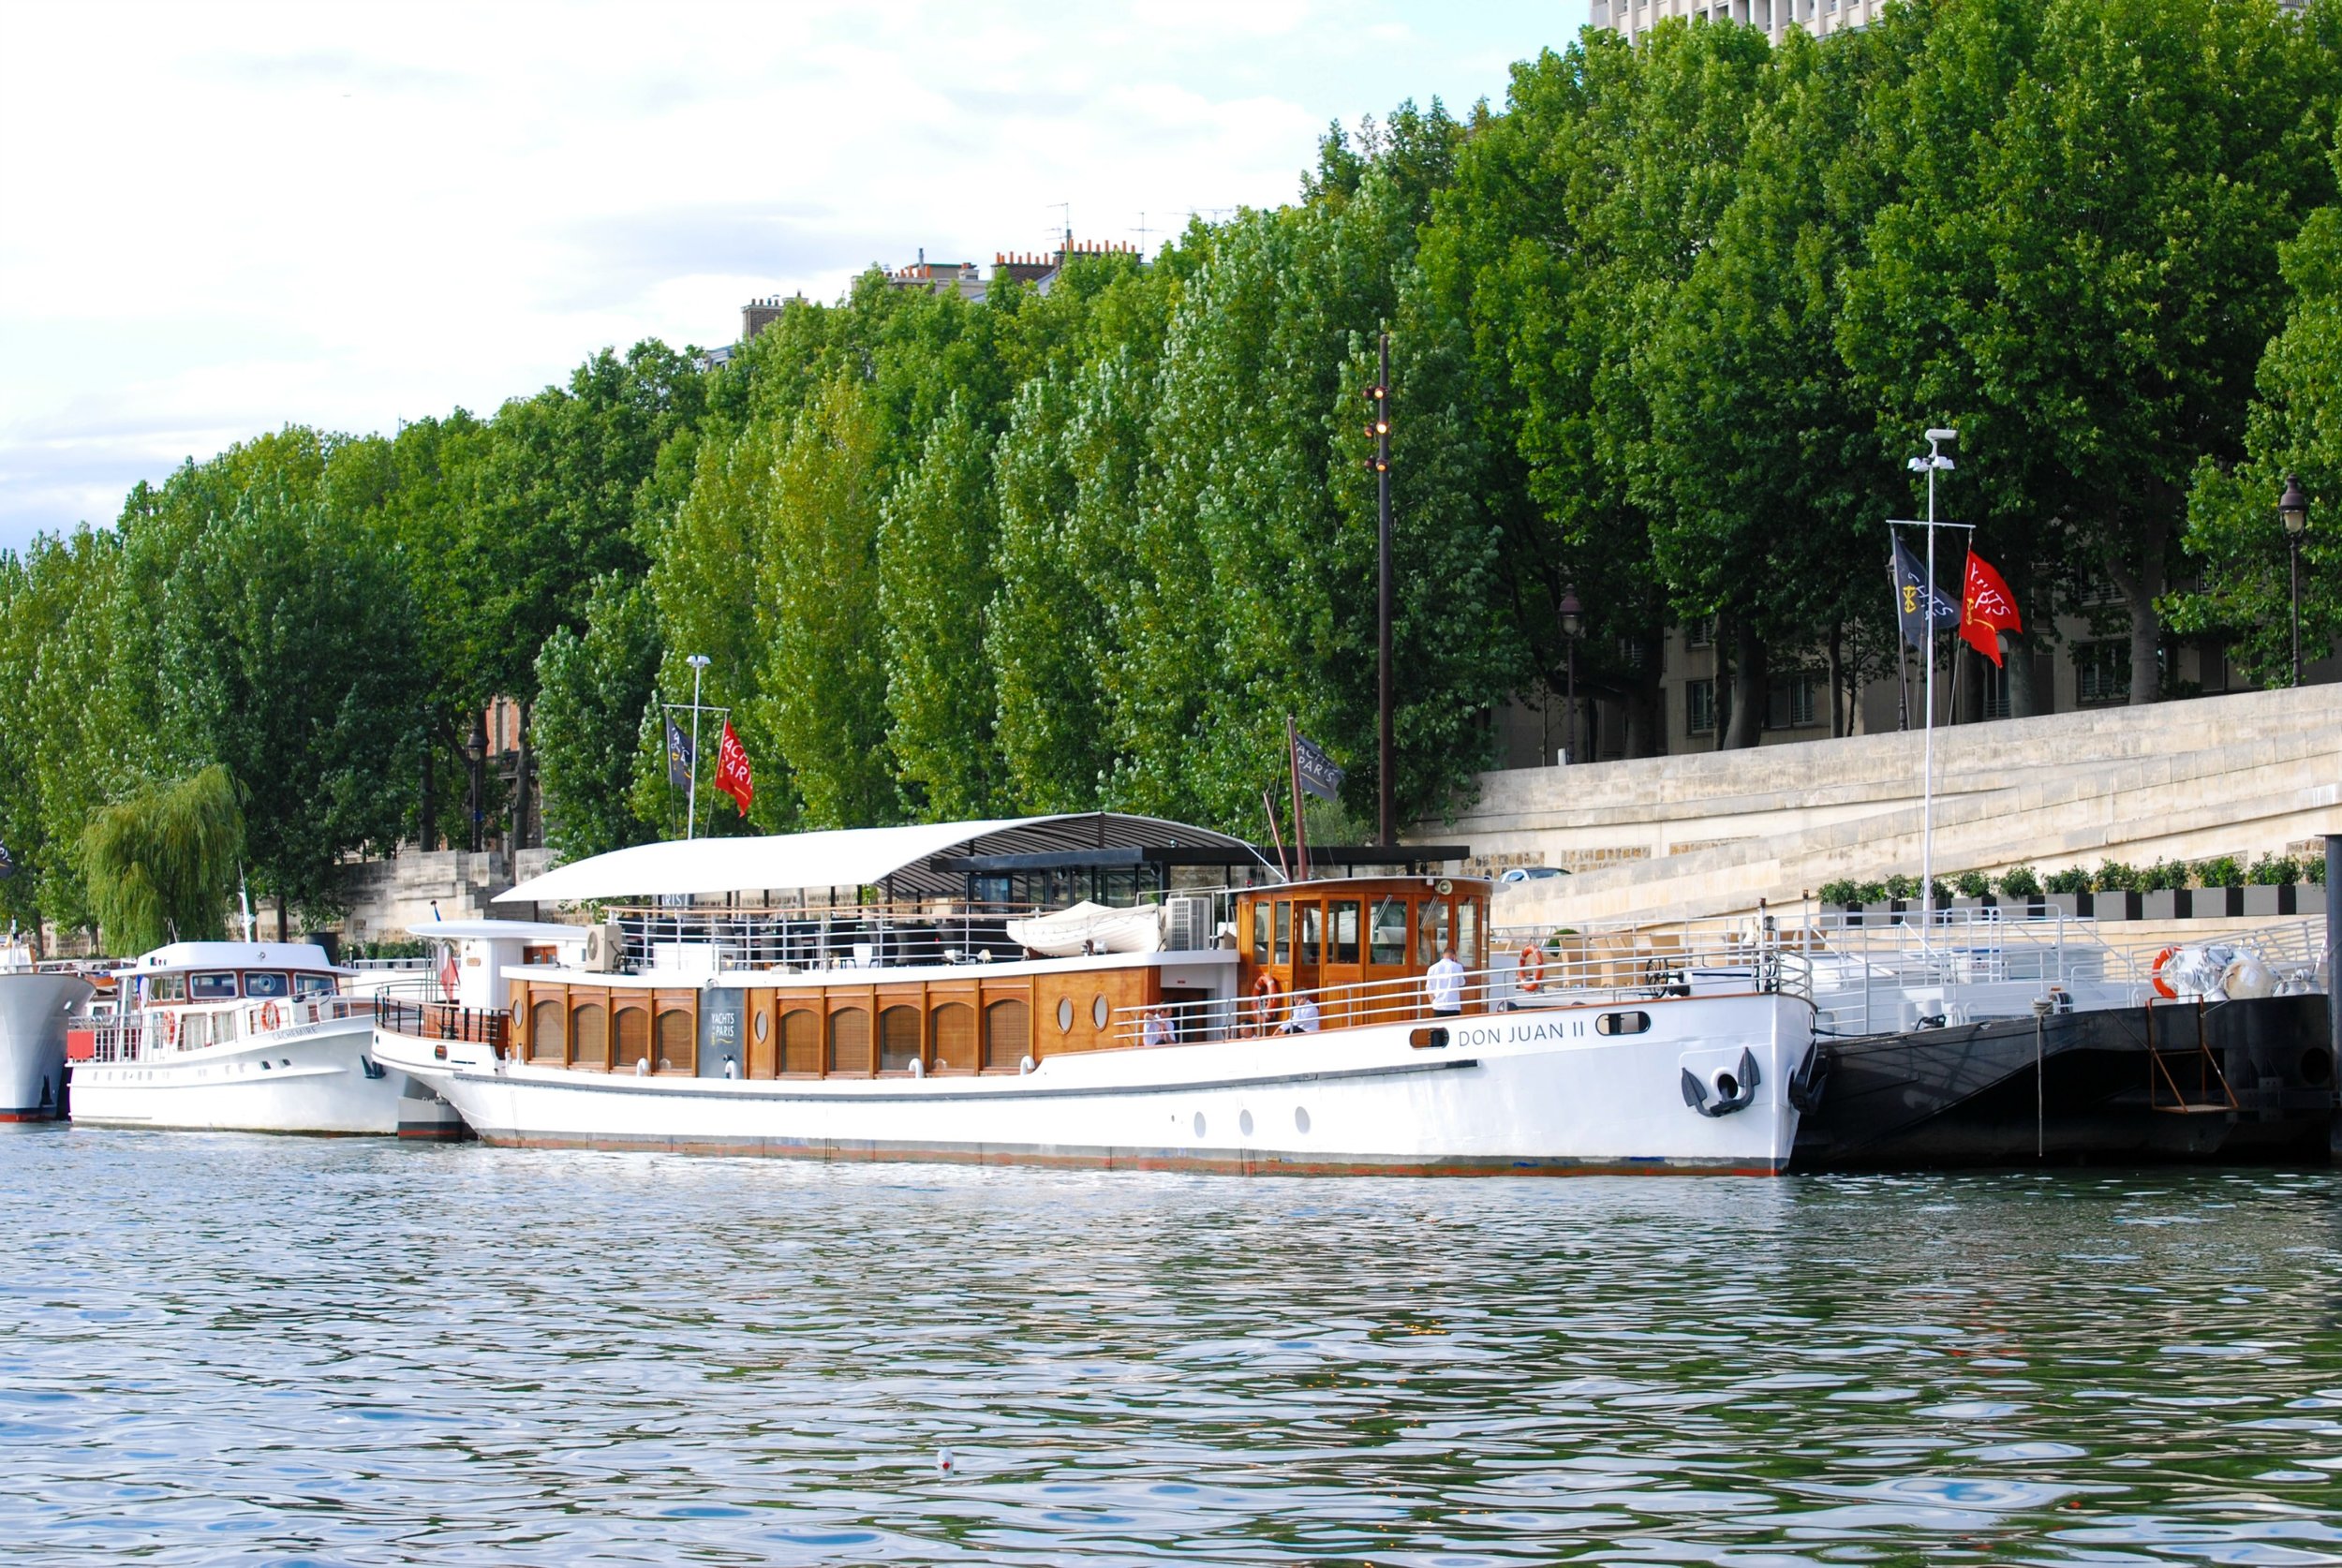 Blog - Paris - Boat on Seine2.jpg